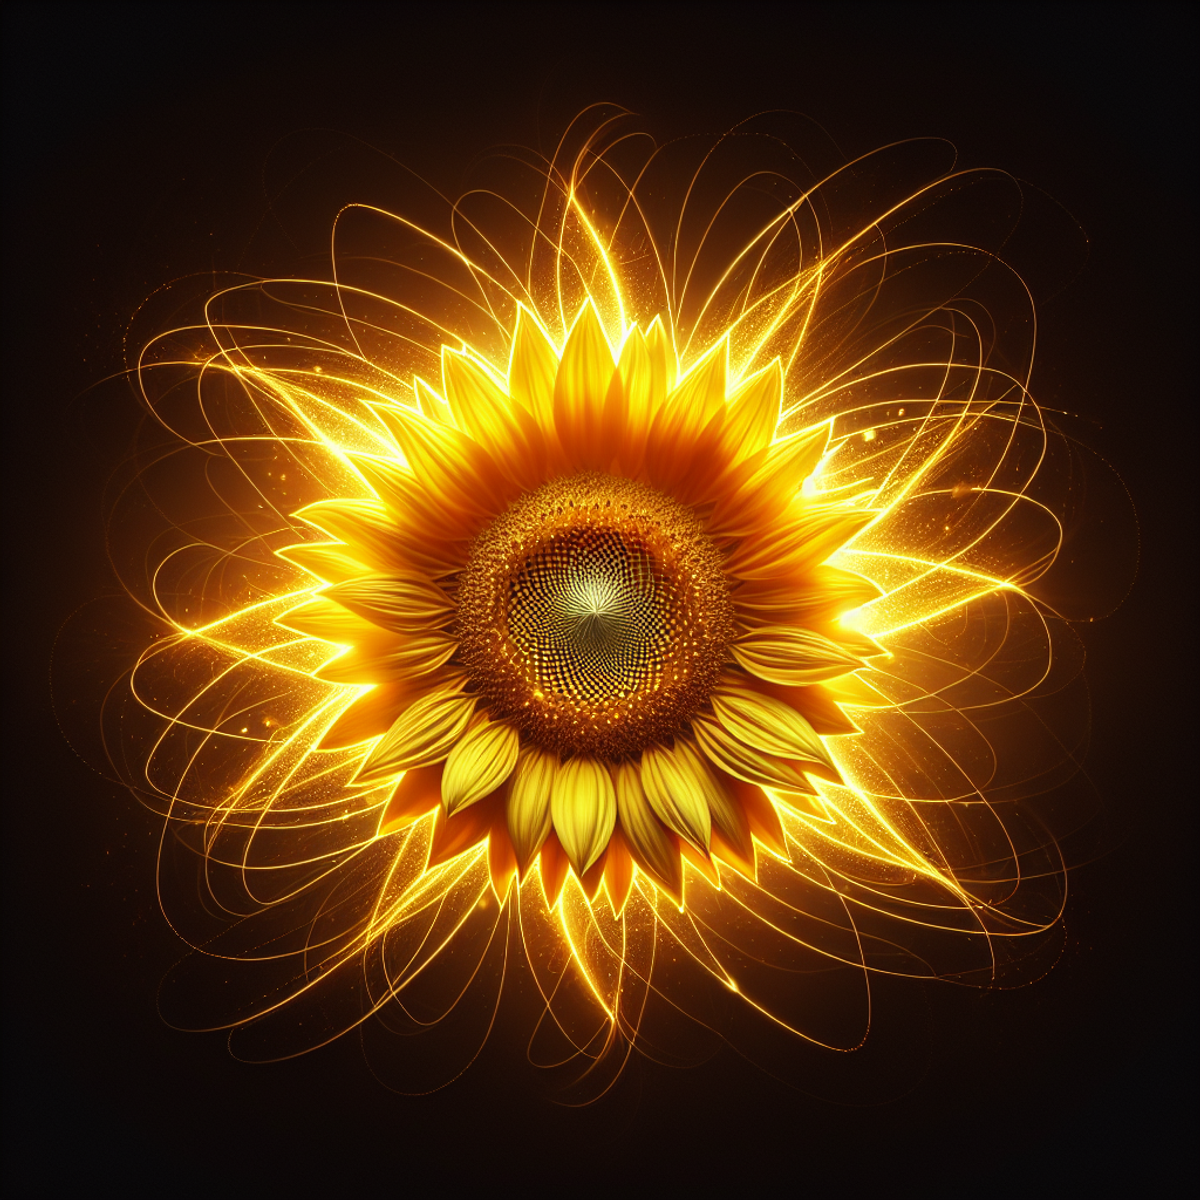 Żywy słonecznik w pełnym rozkwicie, emananie świecącym światłem i halo blasku.